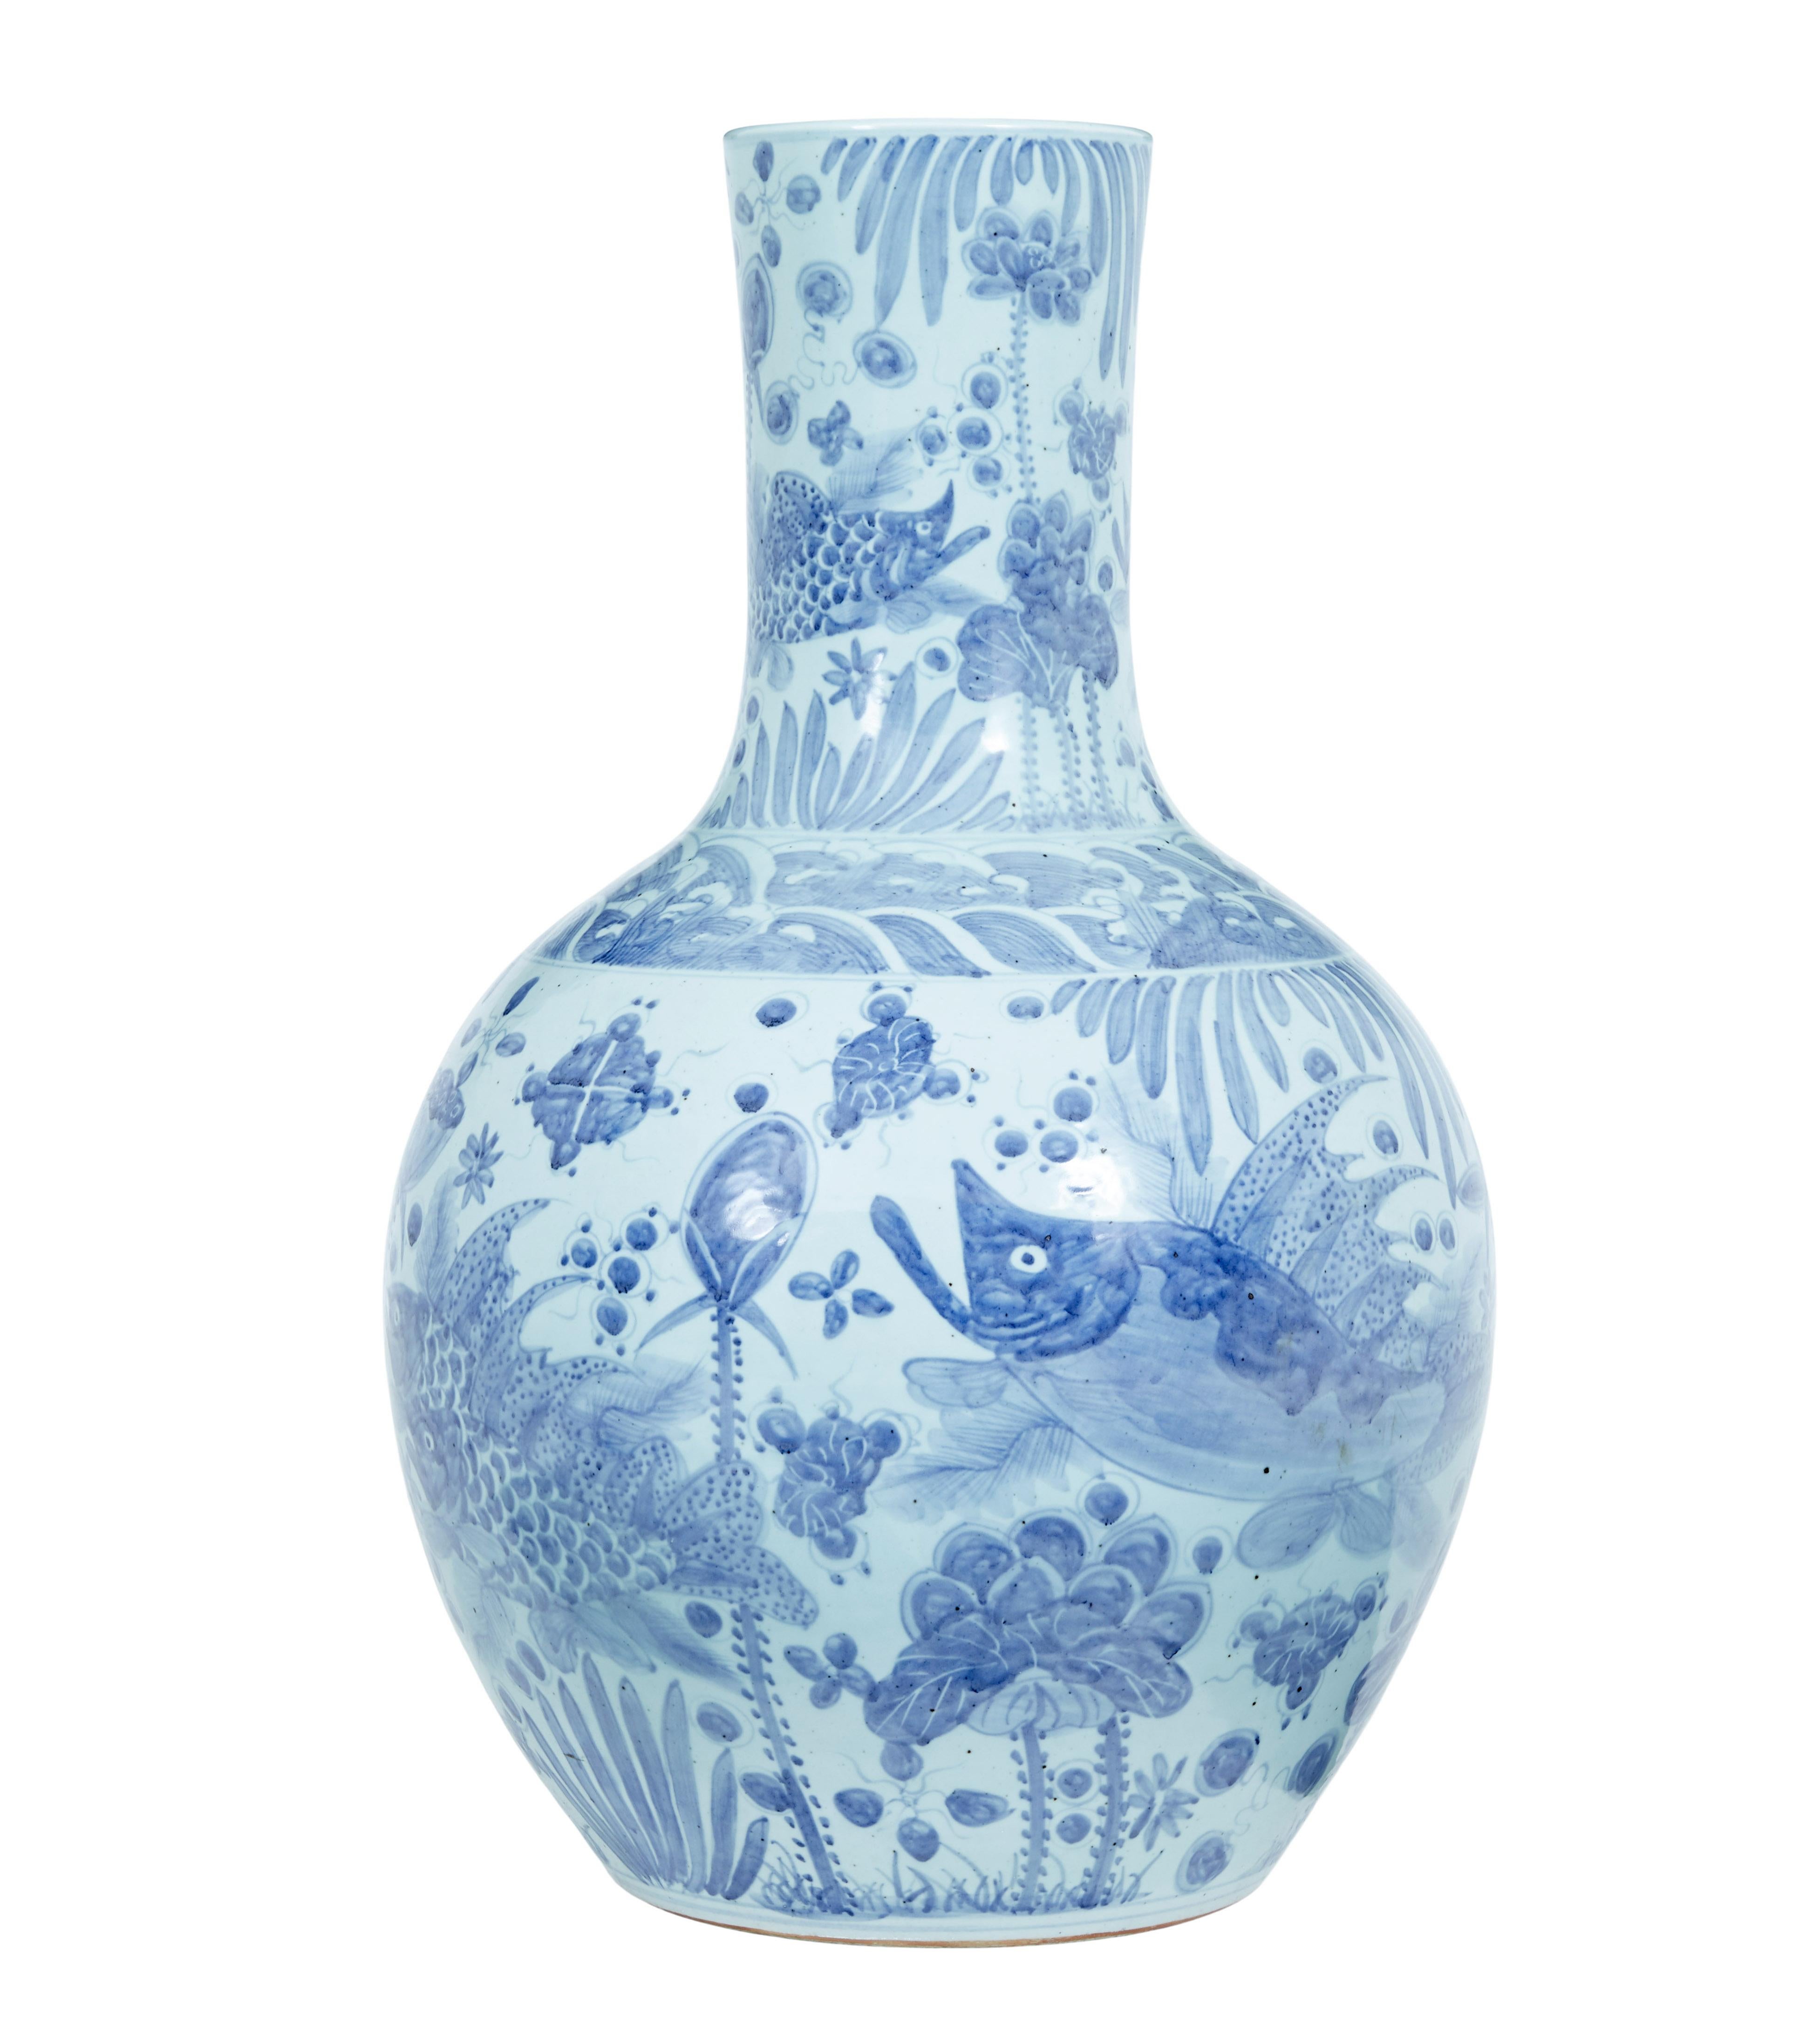 Ming Large Decorative Blue and White Ceramic Chinese Vase